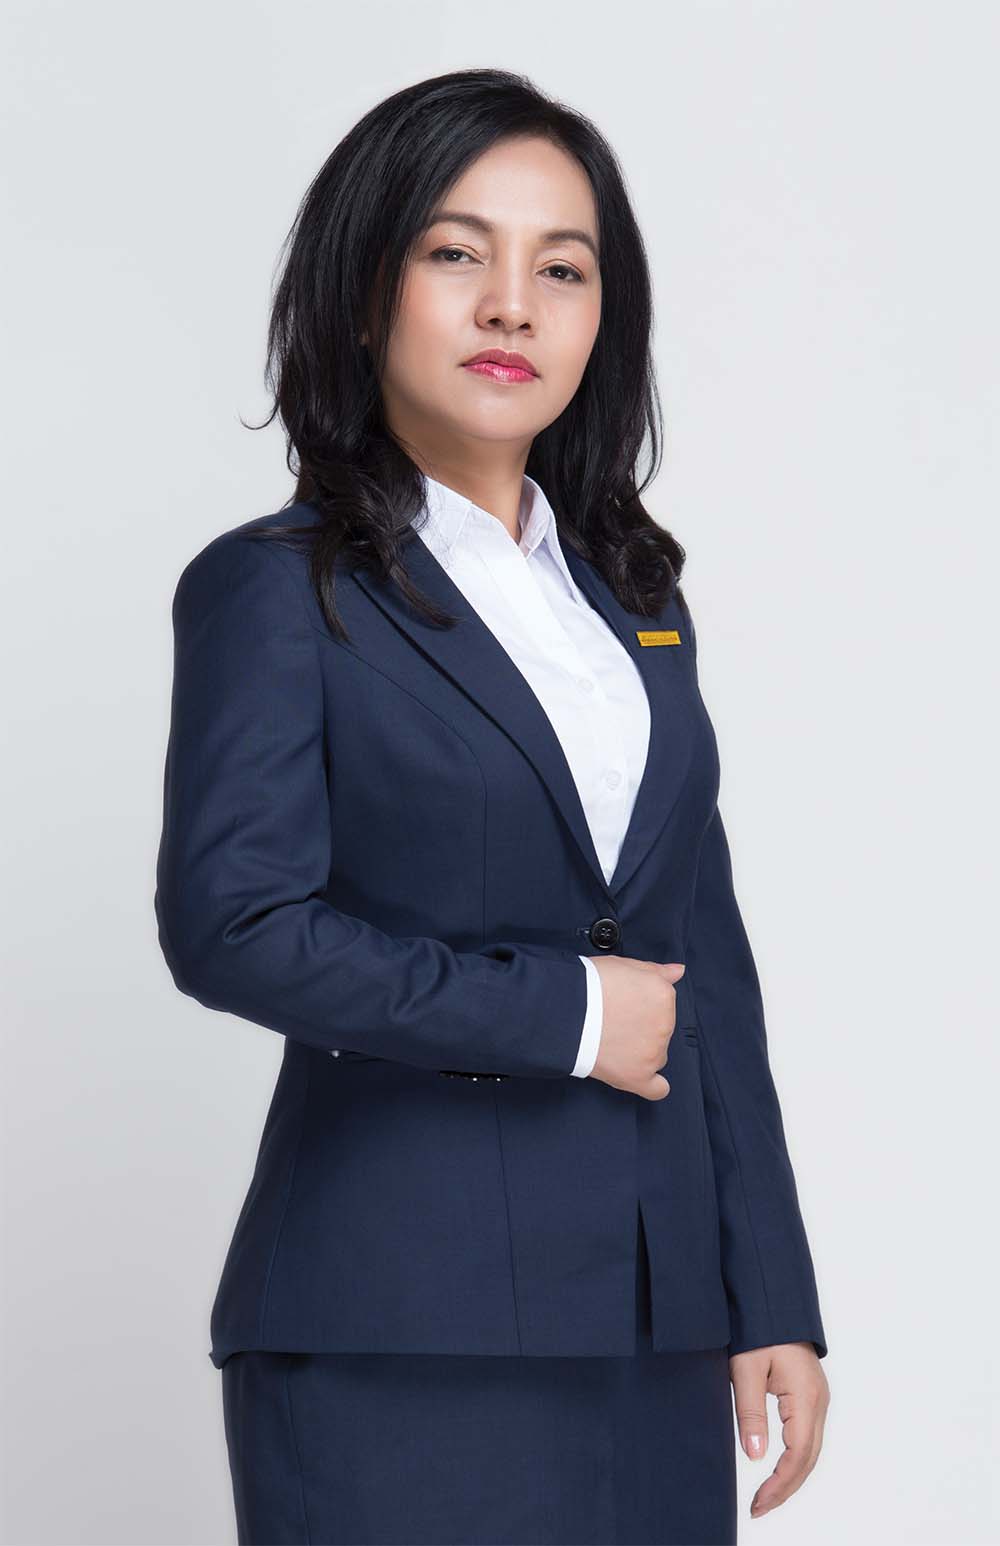 Bà Nguyễn Đức Thạch Diễm, Phó chủ tịch thường trực HĐQT, kiêm Tổng giám đốc Sacombank